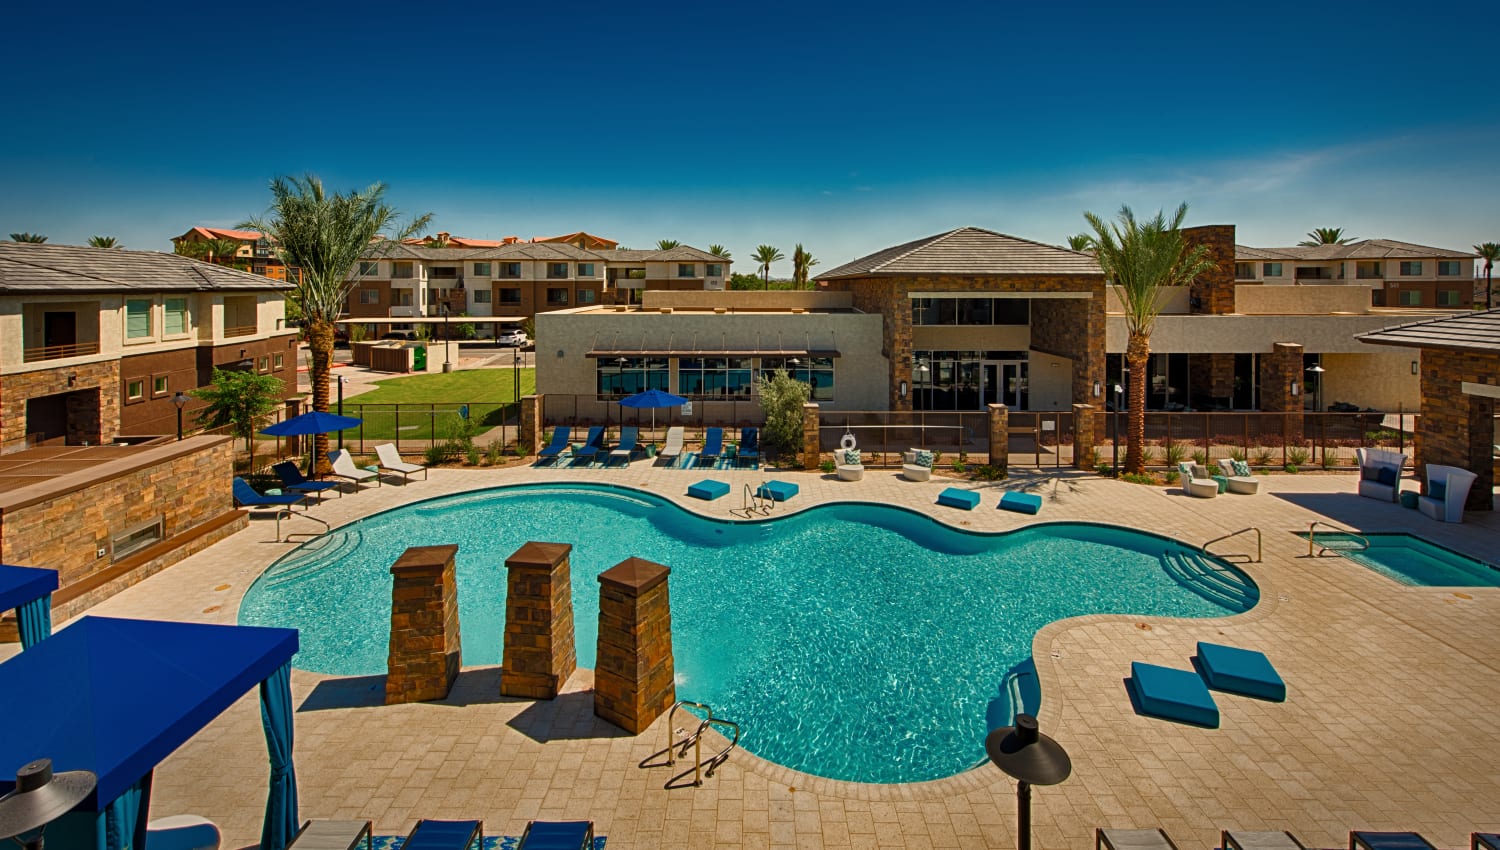 Aerial view of the swimming pool at Ocio Plaza Del Rio in Peoria, Arizona